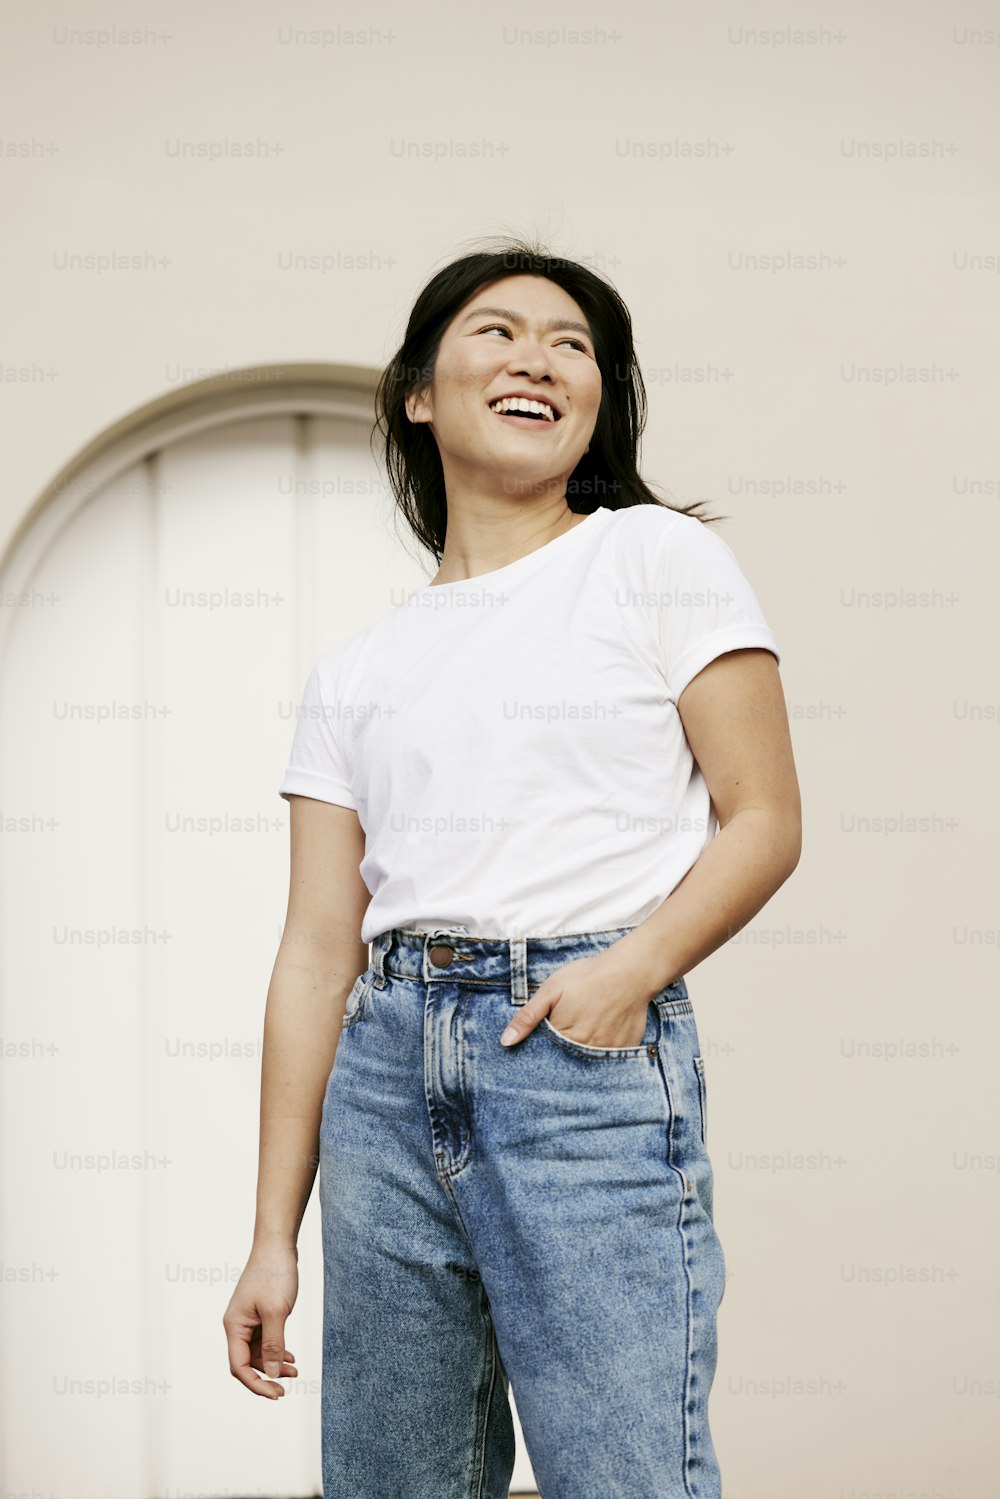 Una mujer con camisa blanca y jeans riendo